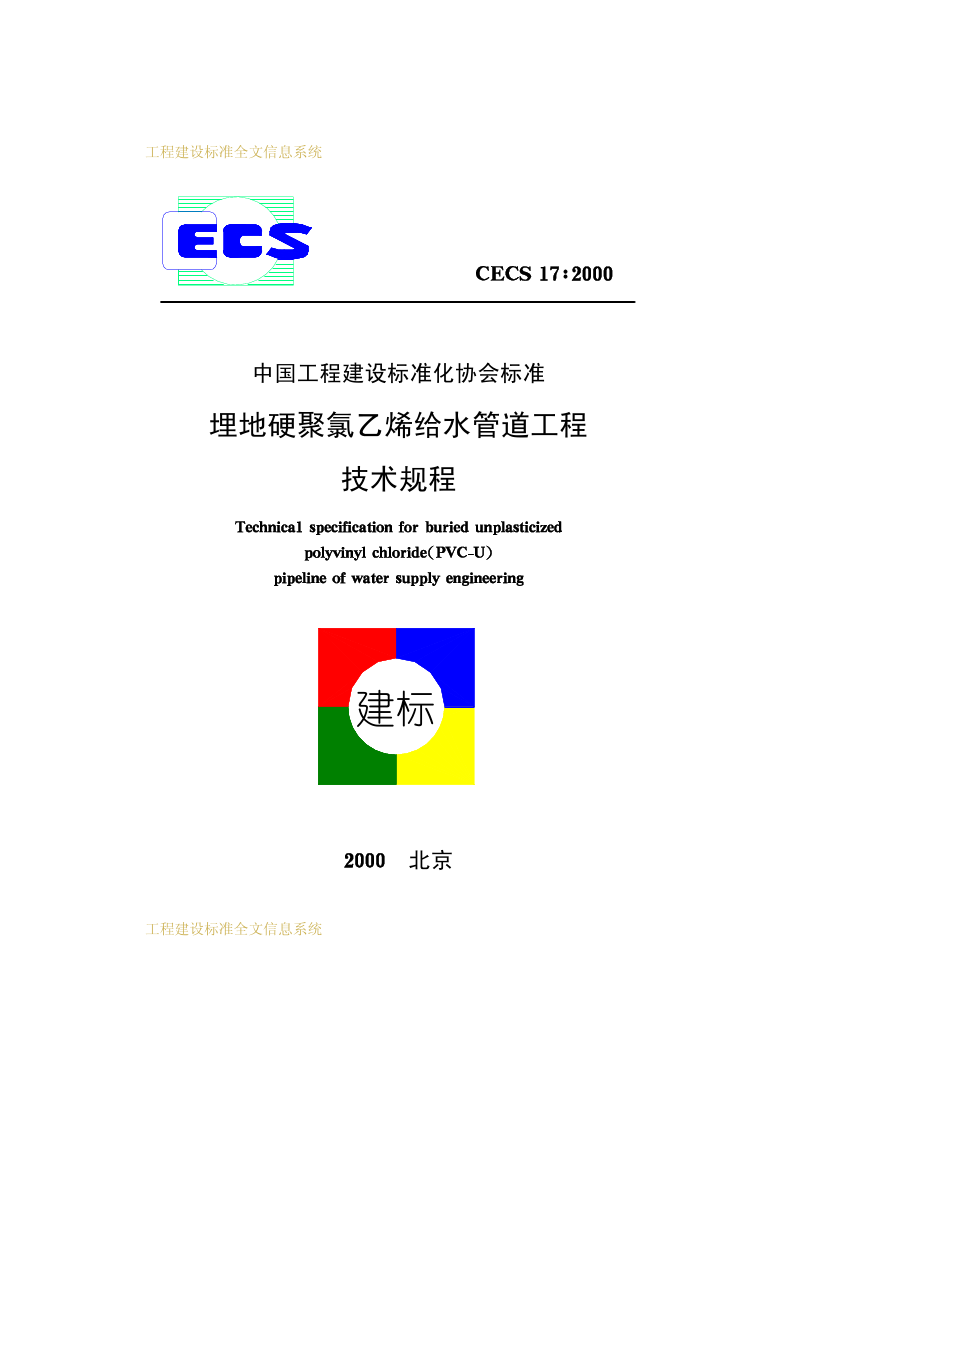 CECS17：2000埋地硬聚氯乙烯给水管道工程技术规程